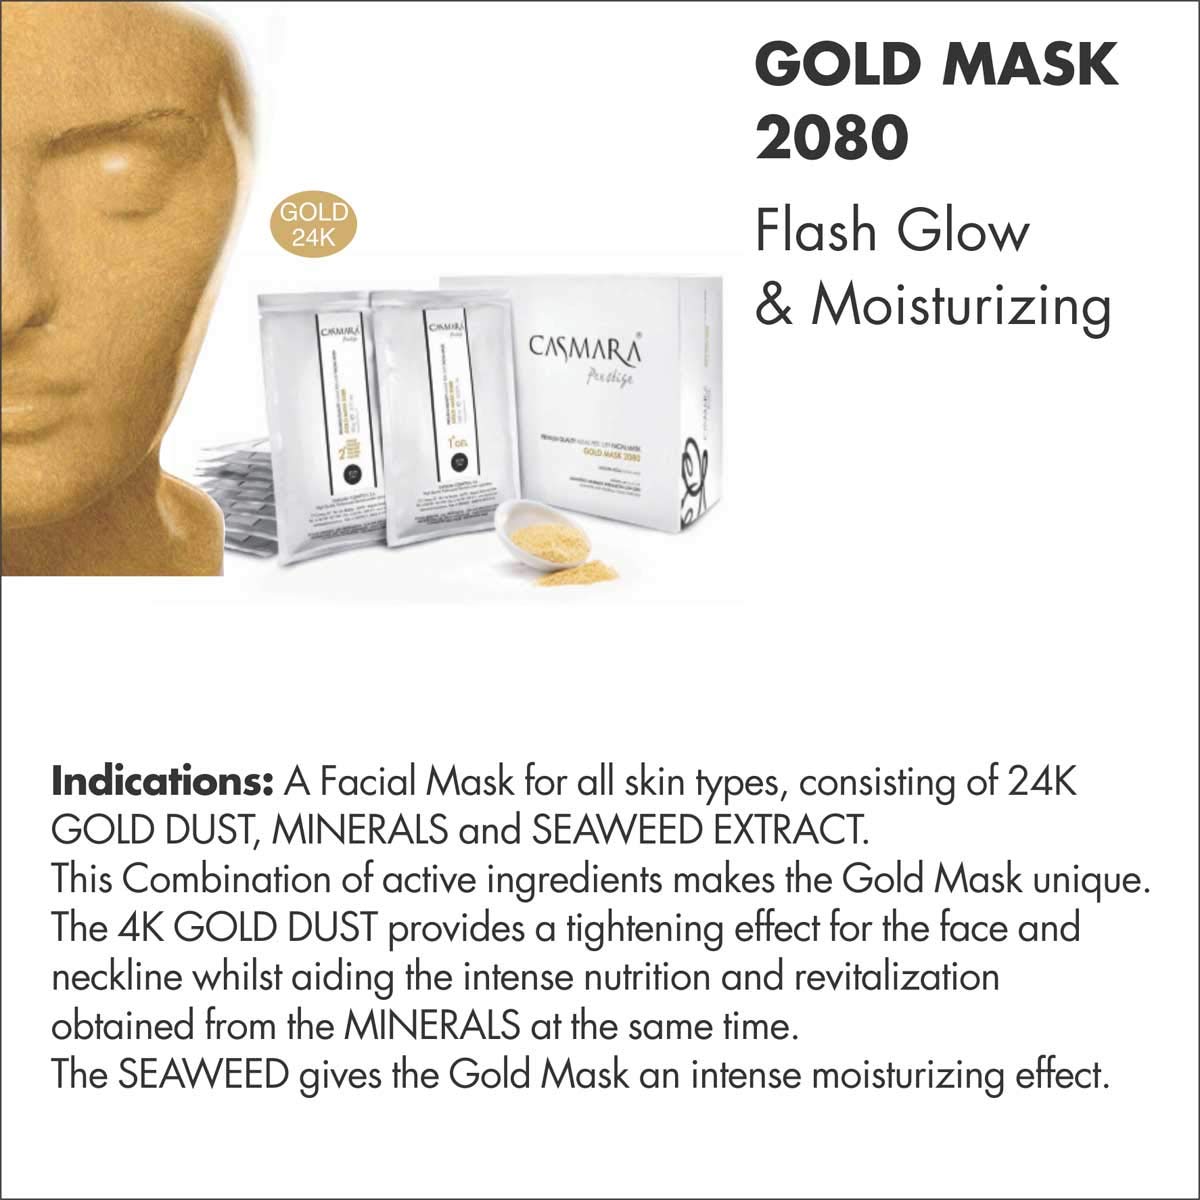 Casmara Mask for Flash Glow & Moisturizing Gold Mask 2080 (1gel & 1powder) Casmara